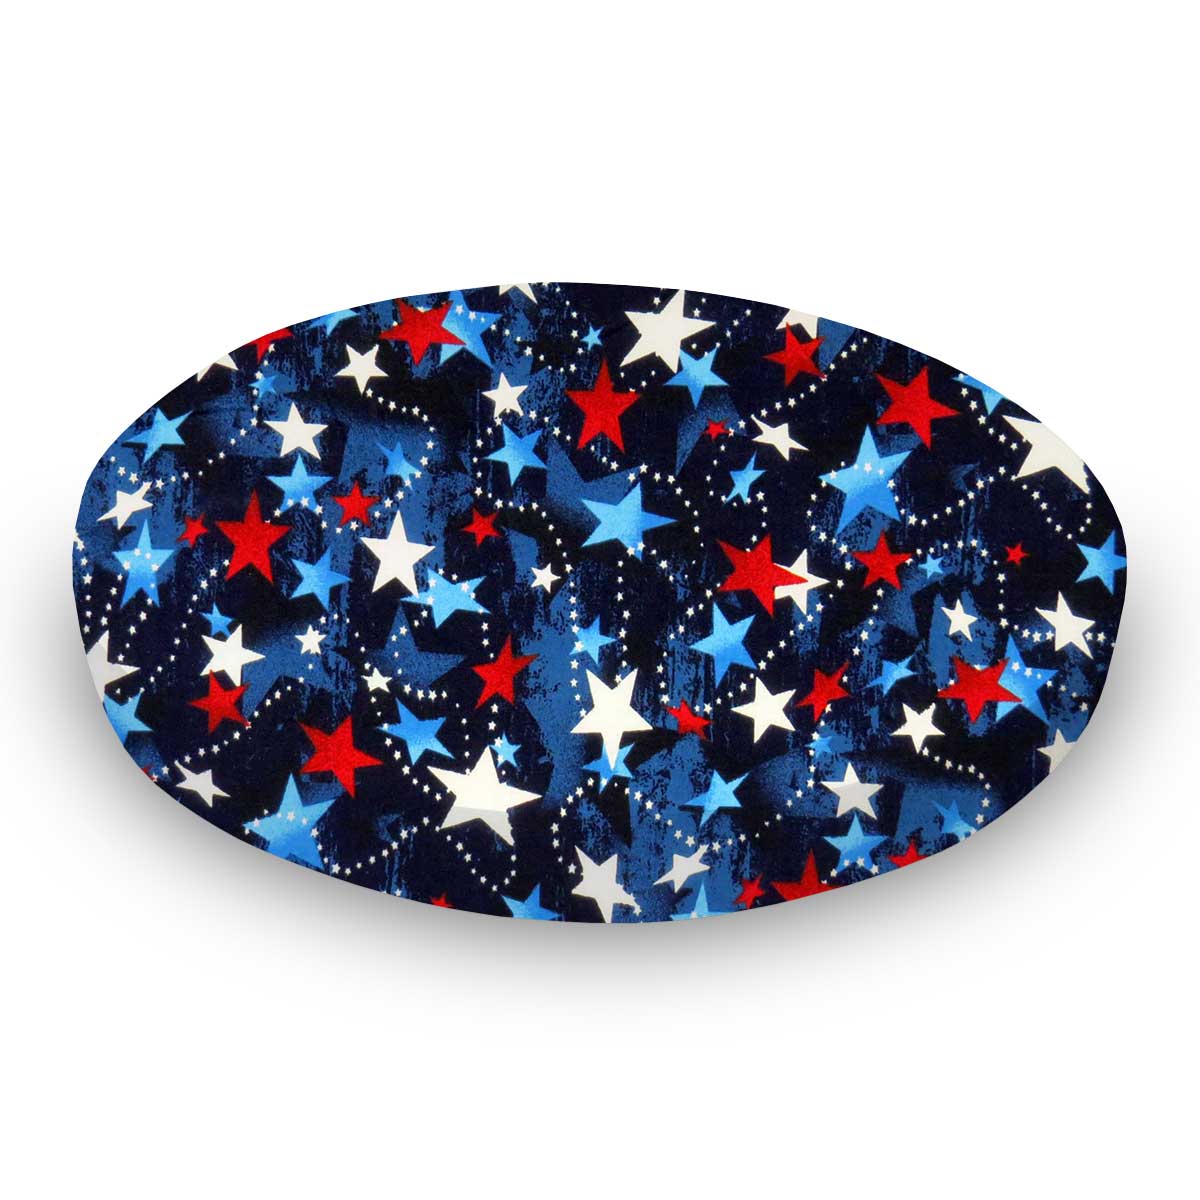 Oval Crib (Stokke Sleepi) - Patriotic Stars - Fitted  Oval